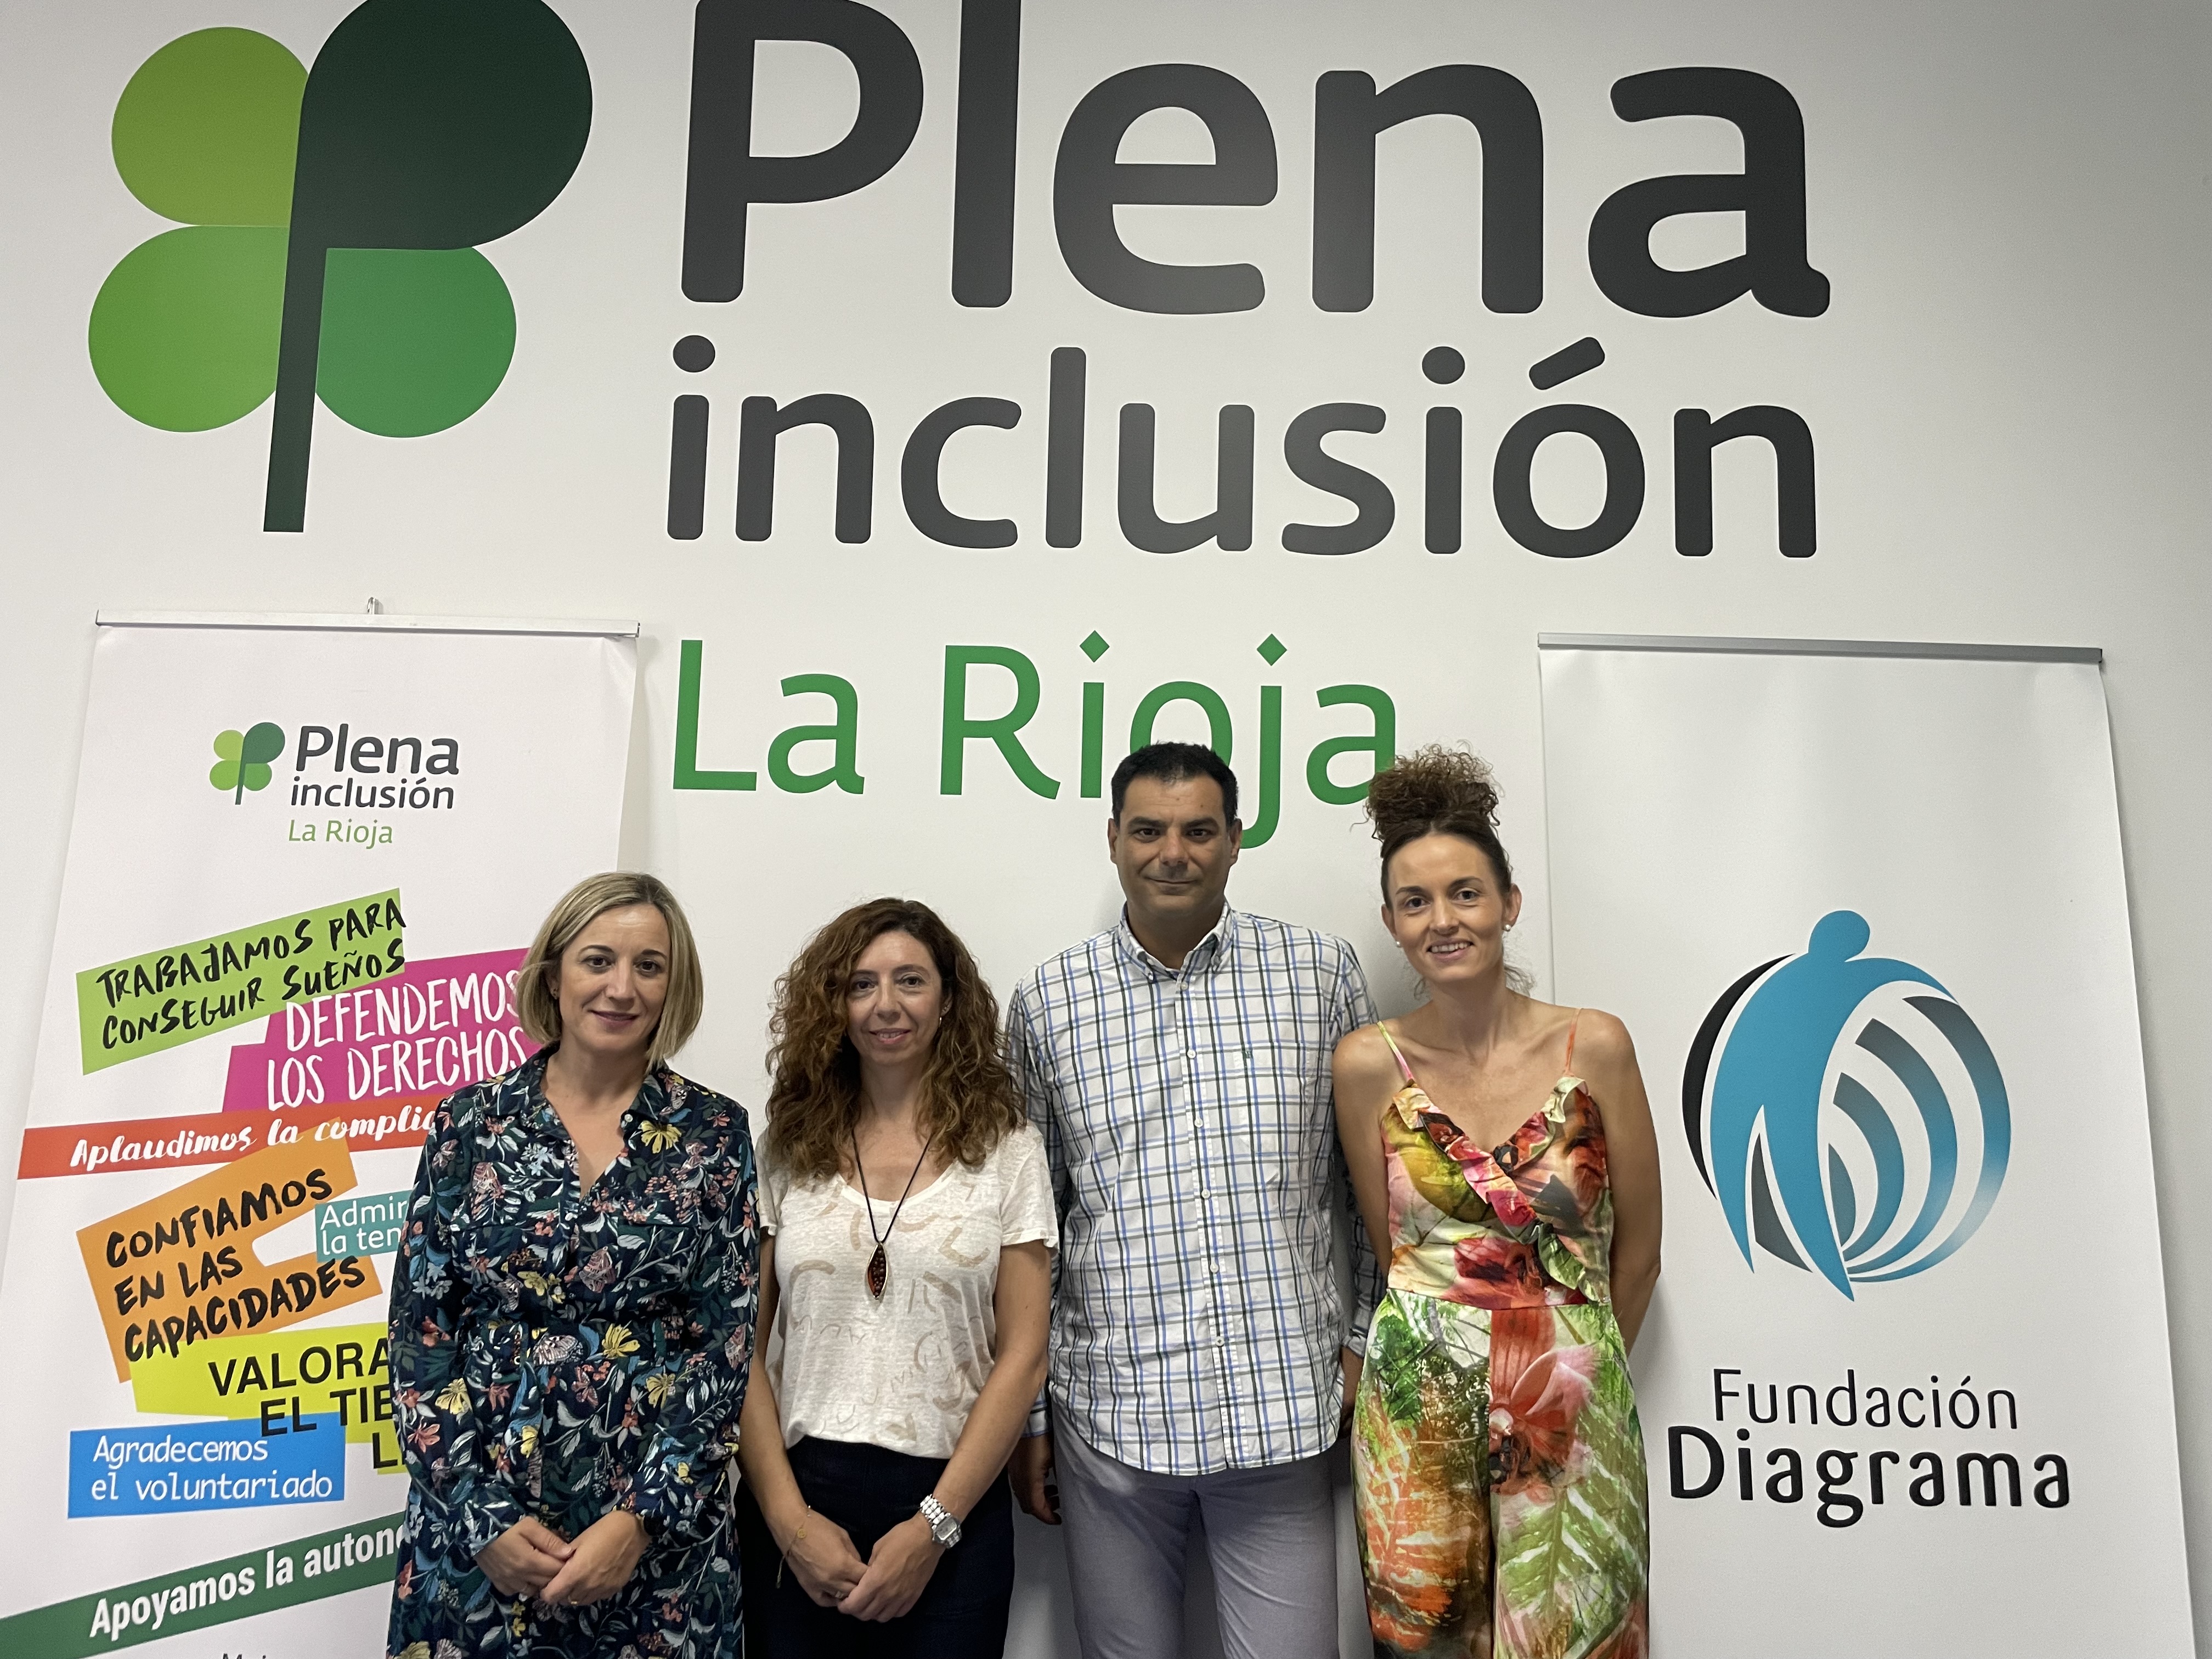 Plena inclusión La Rioja y Fundación Diagrama firman un convenio de colaboración